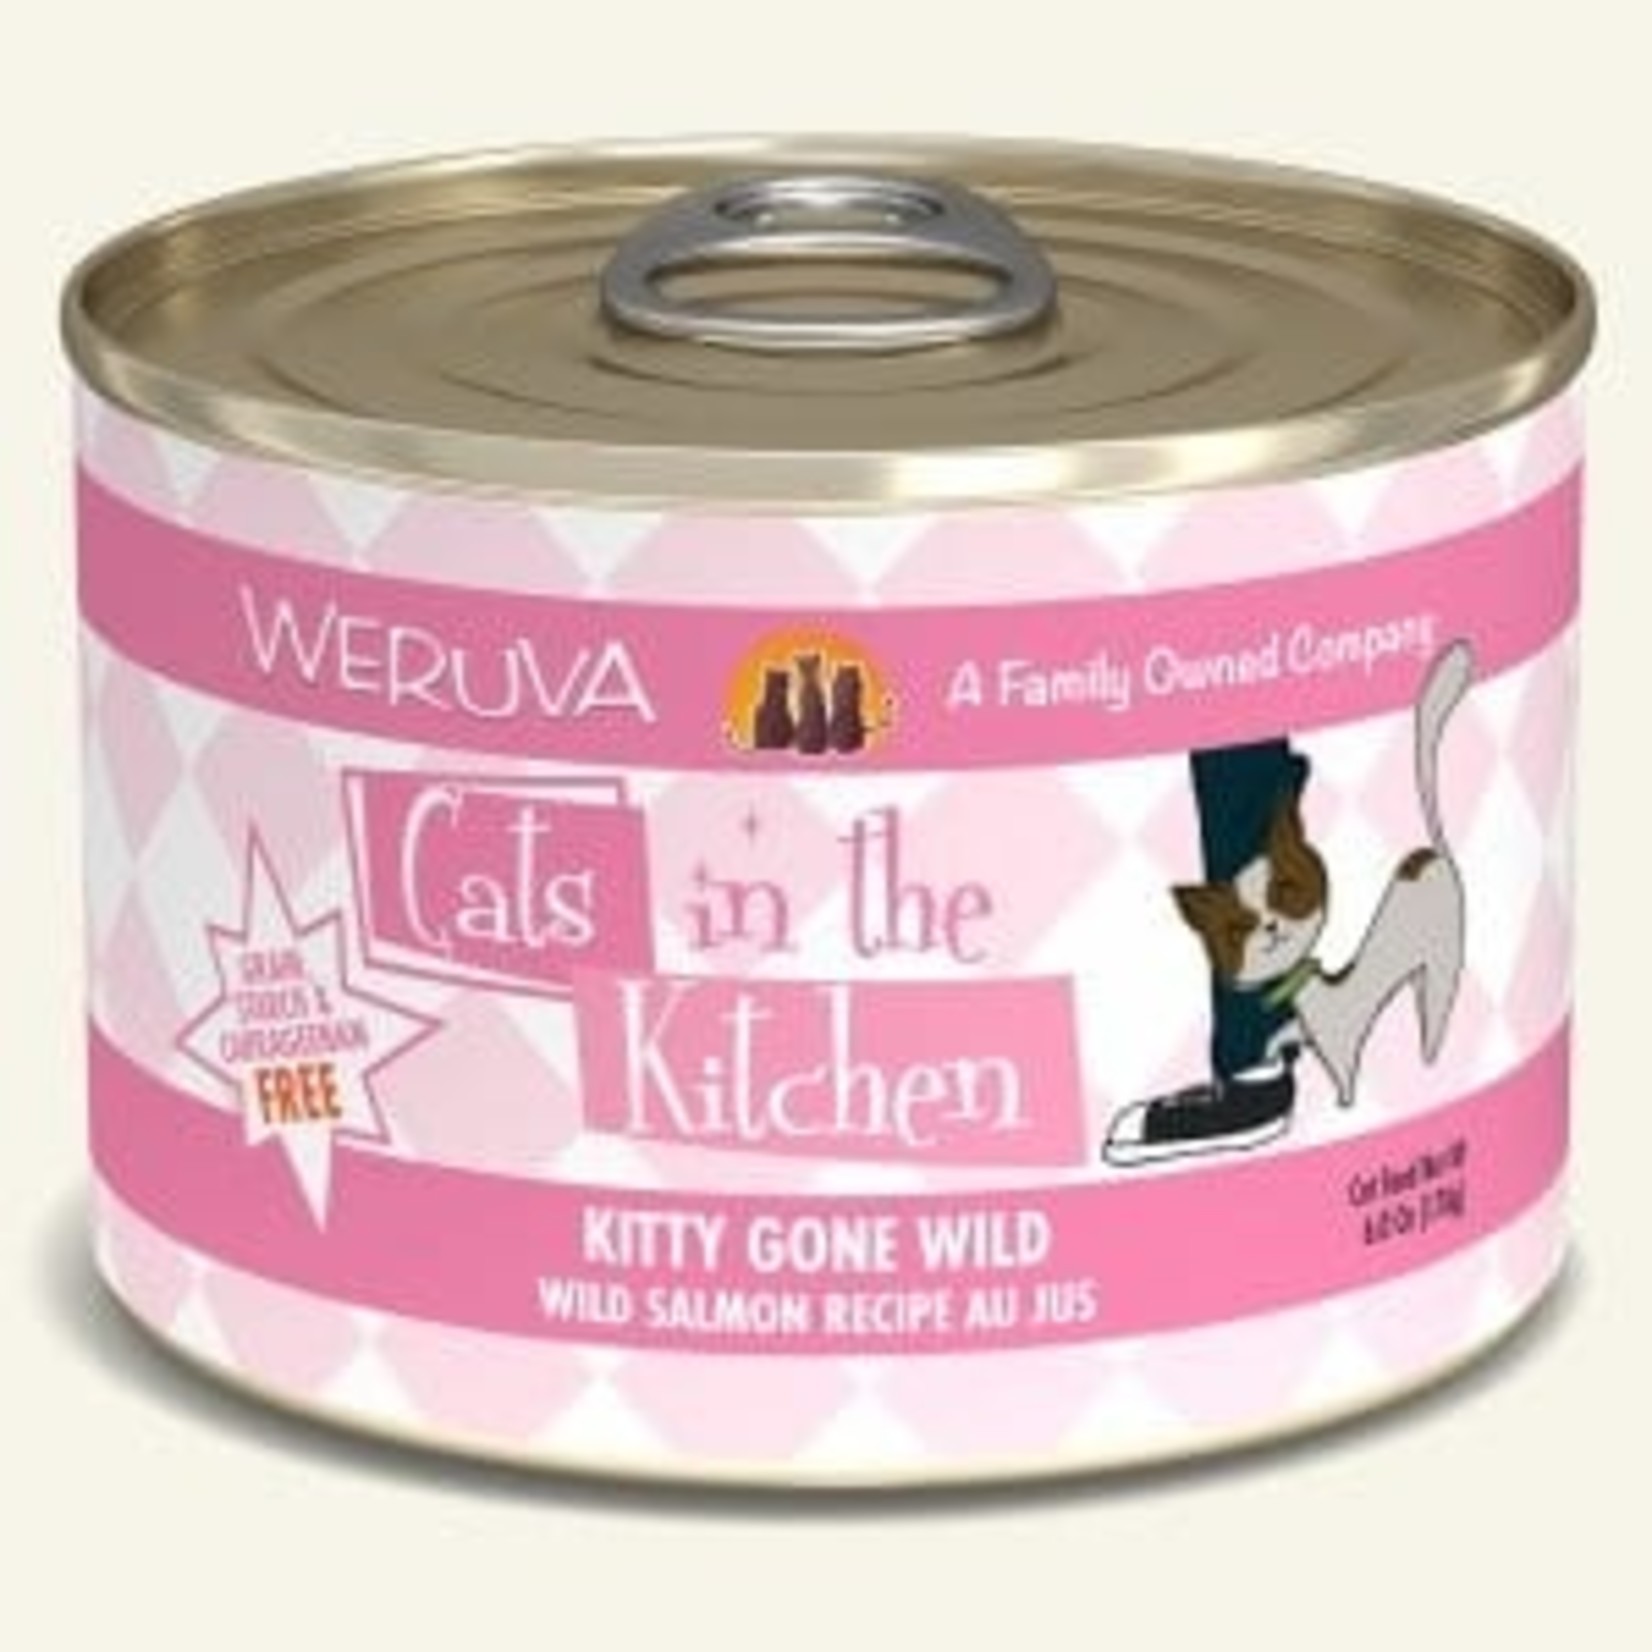 Weruva Weruva Cats in the Kitchen  Wet Cat Food Kitty Gone Wild Wild Salmon Recipe Au Jus 6oz Can